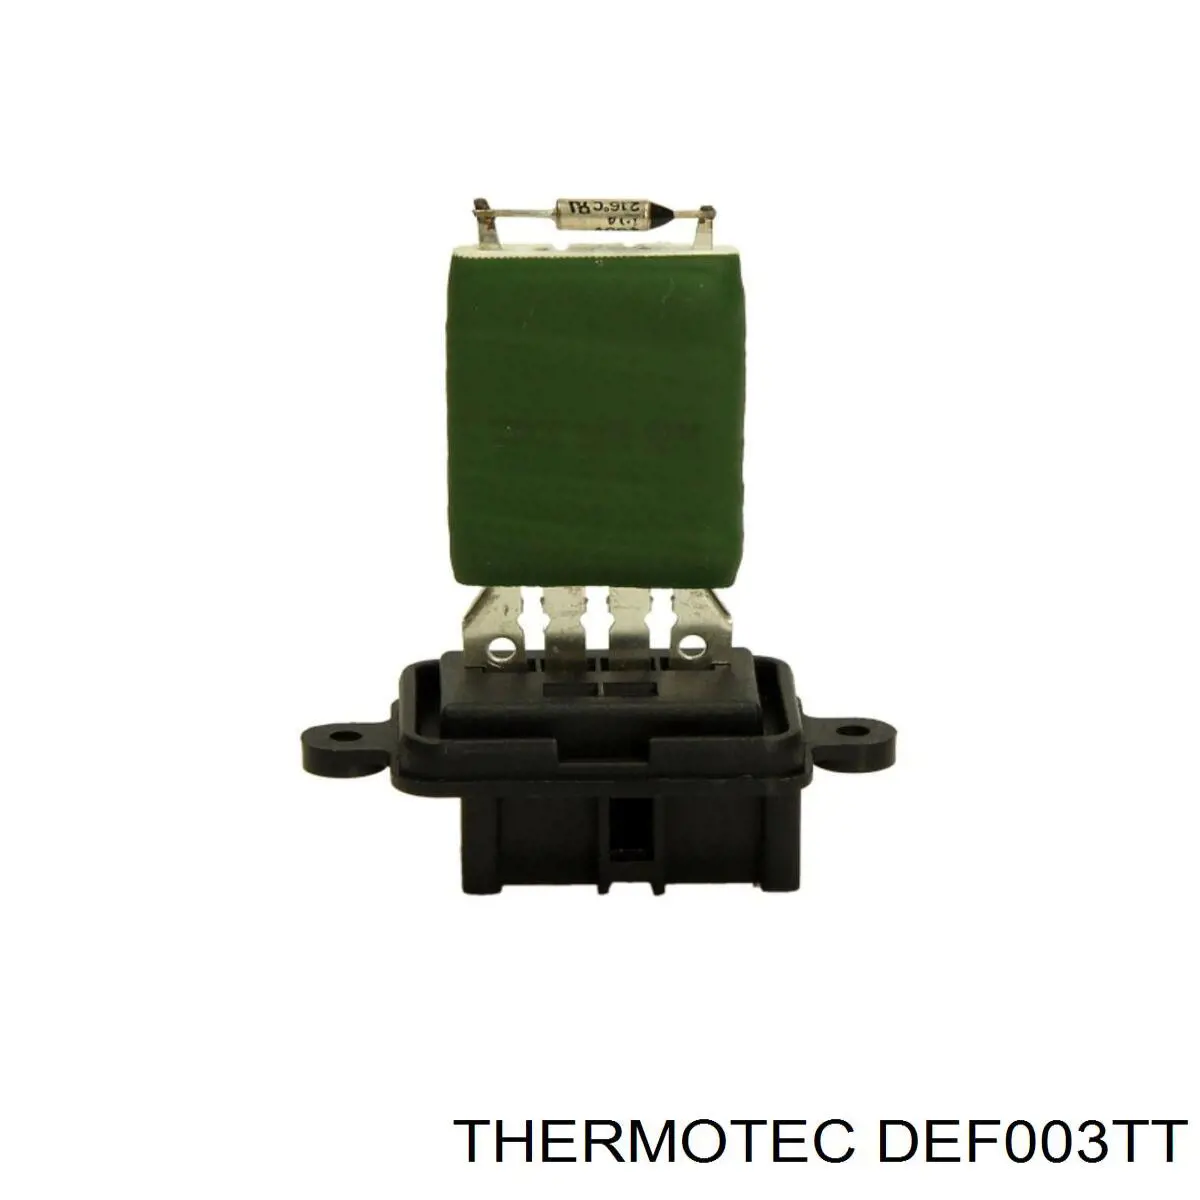 DEF003TT Thermotec resistencia de calefacción